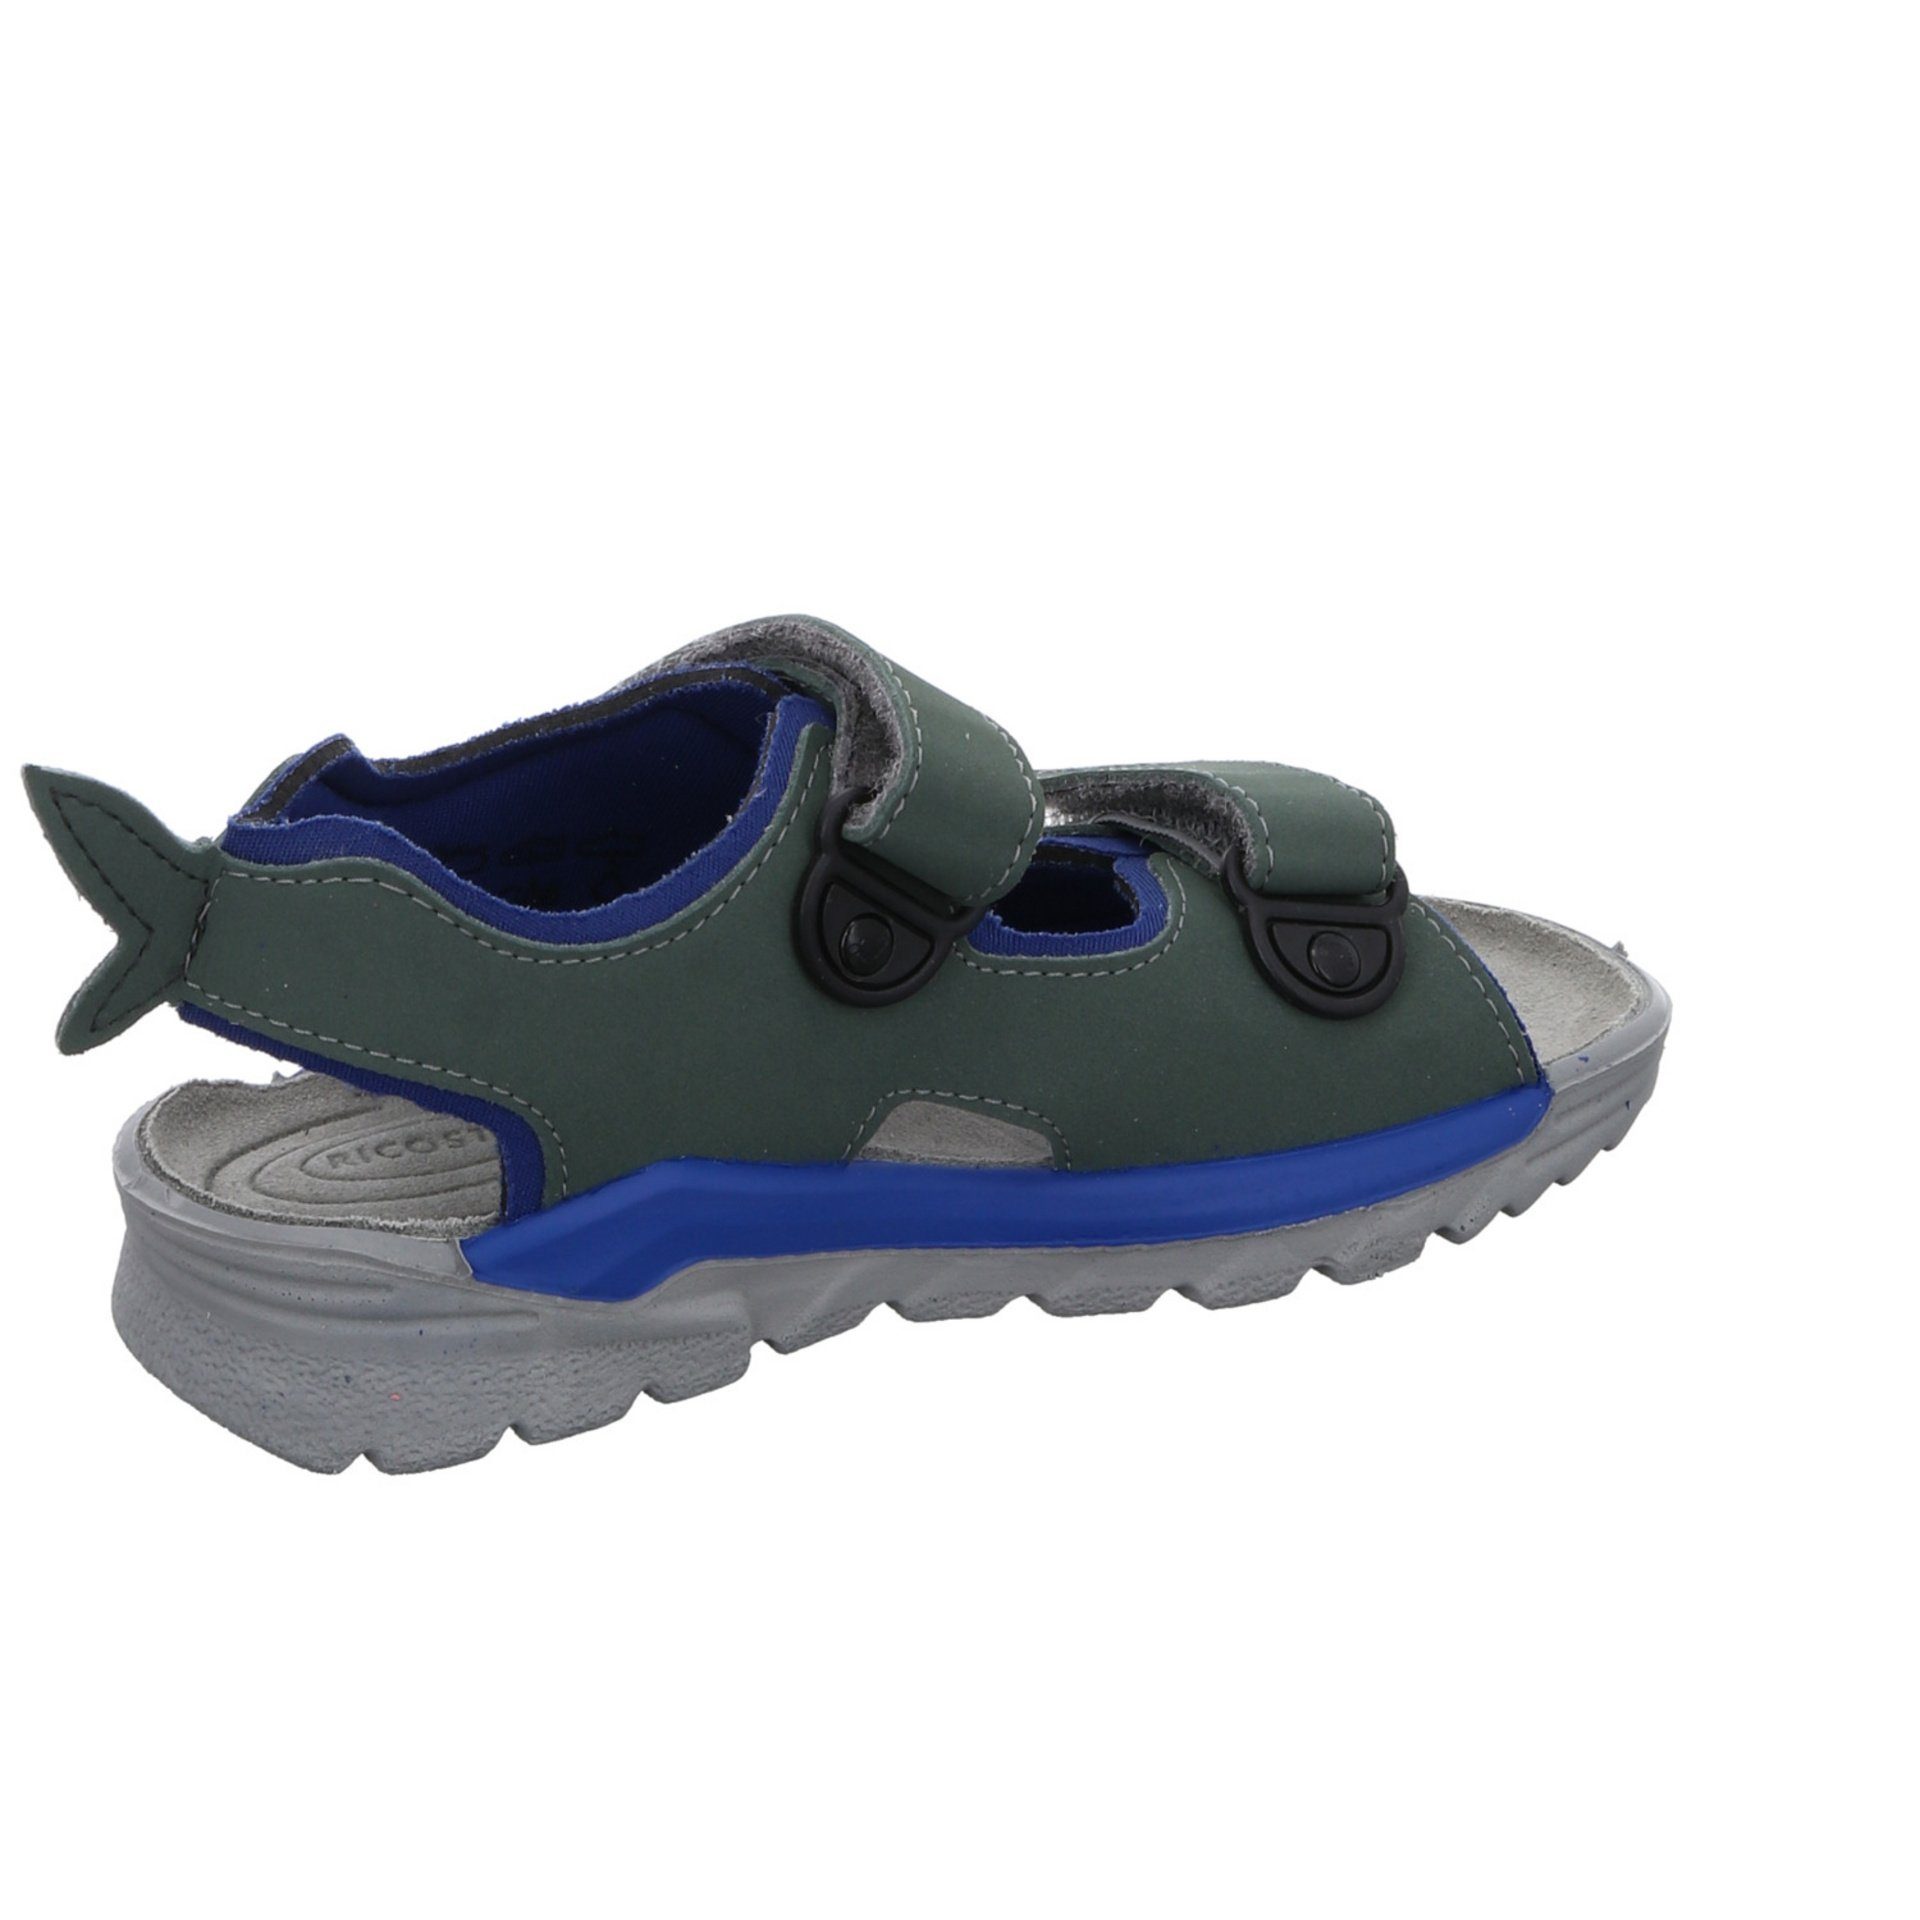 Ricosta Jungen Shark Kinderschuhe Sandale Sandalen Textil Sandale grün Schuhe